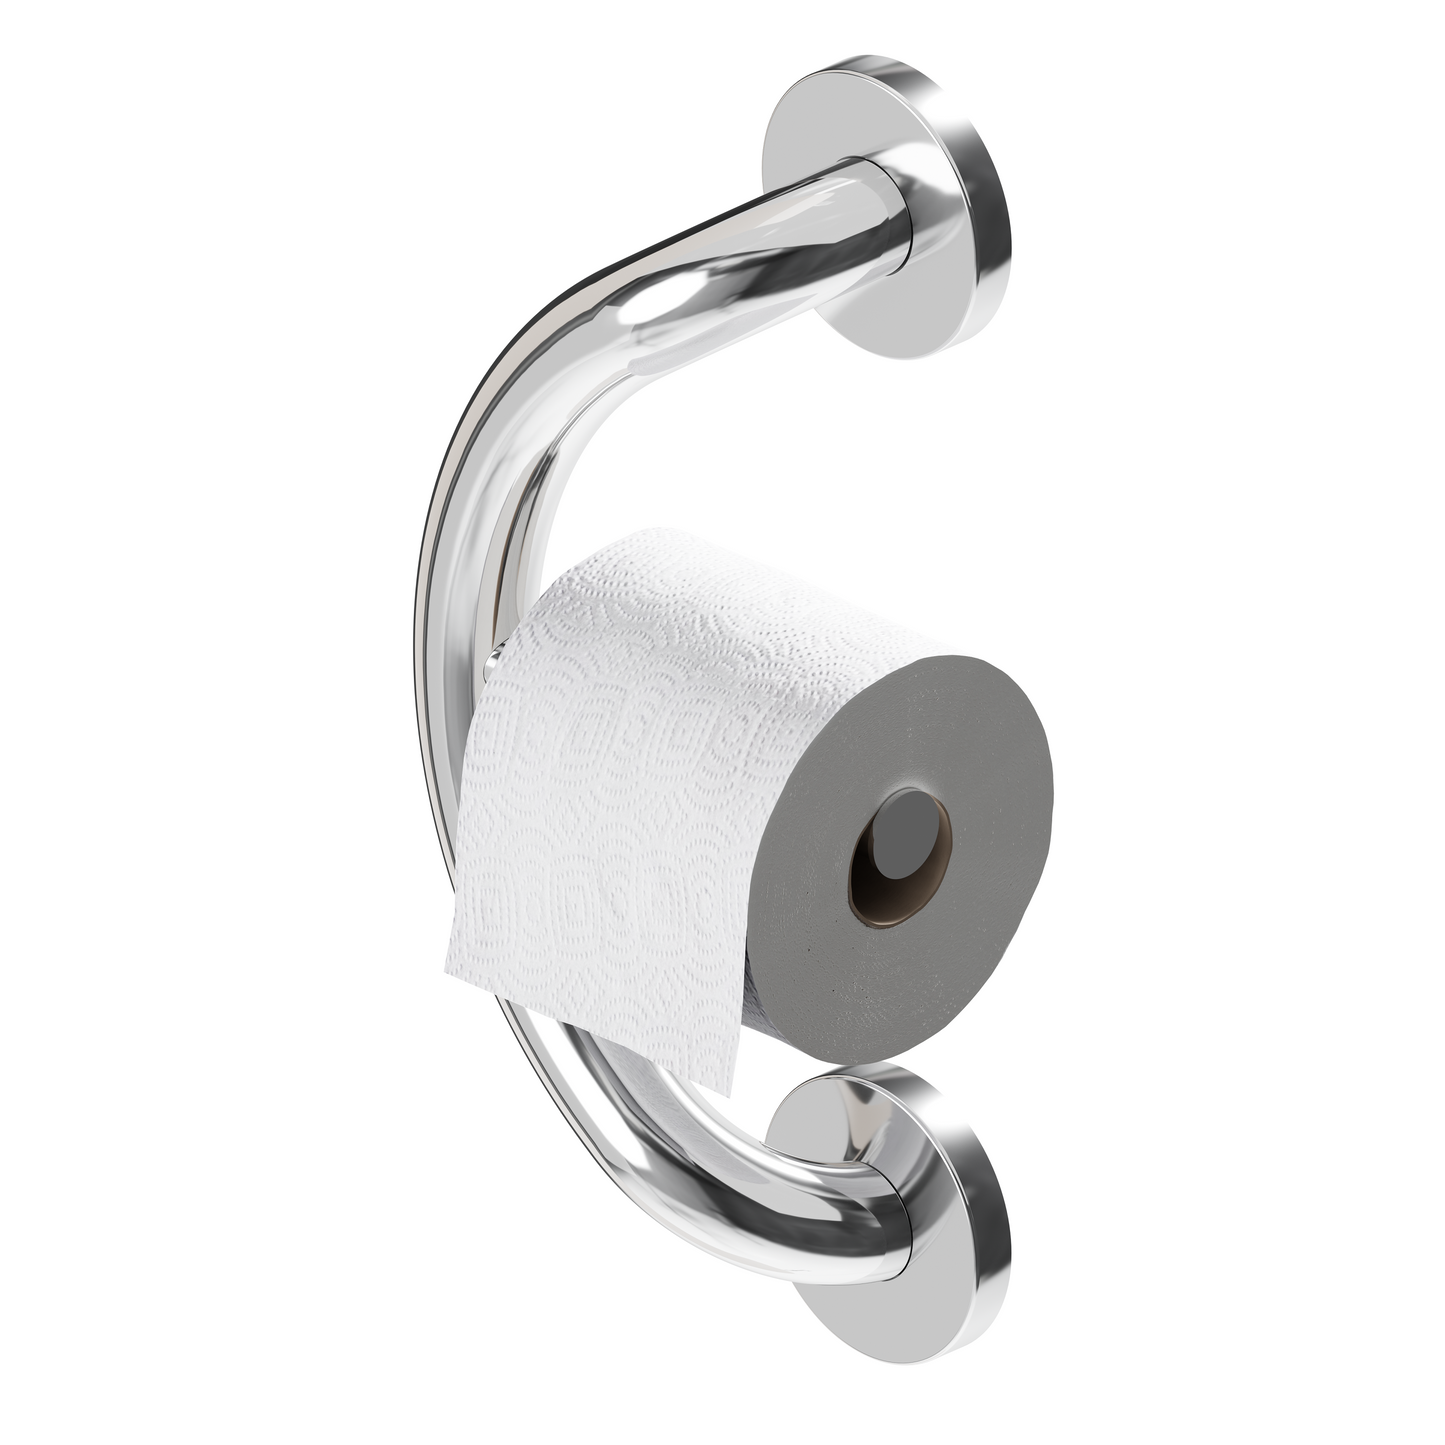 Toilet Paper Holder Grab Bar chrome